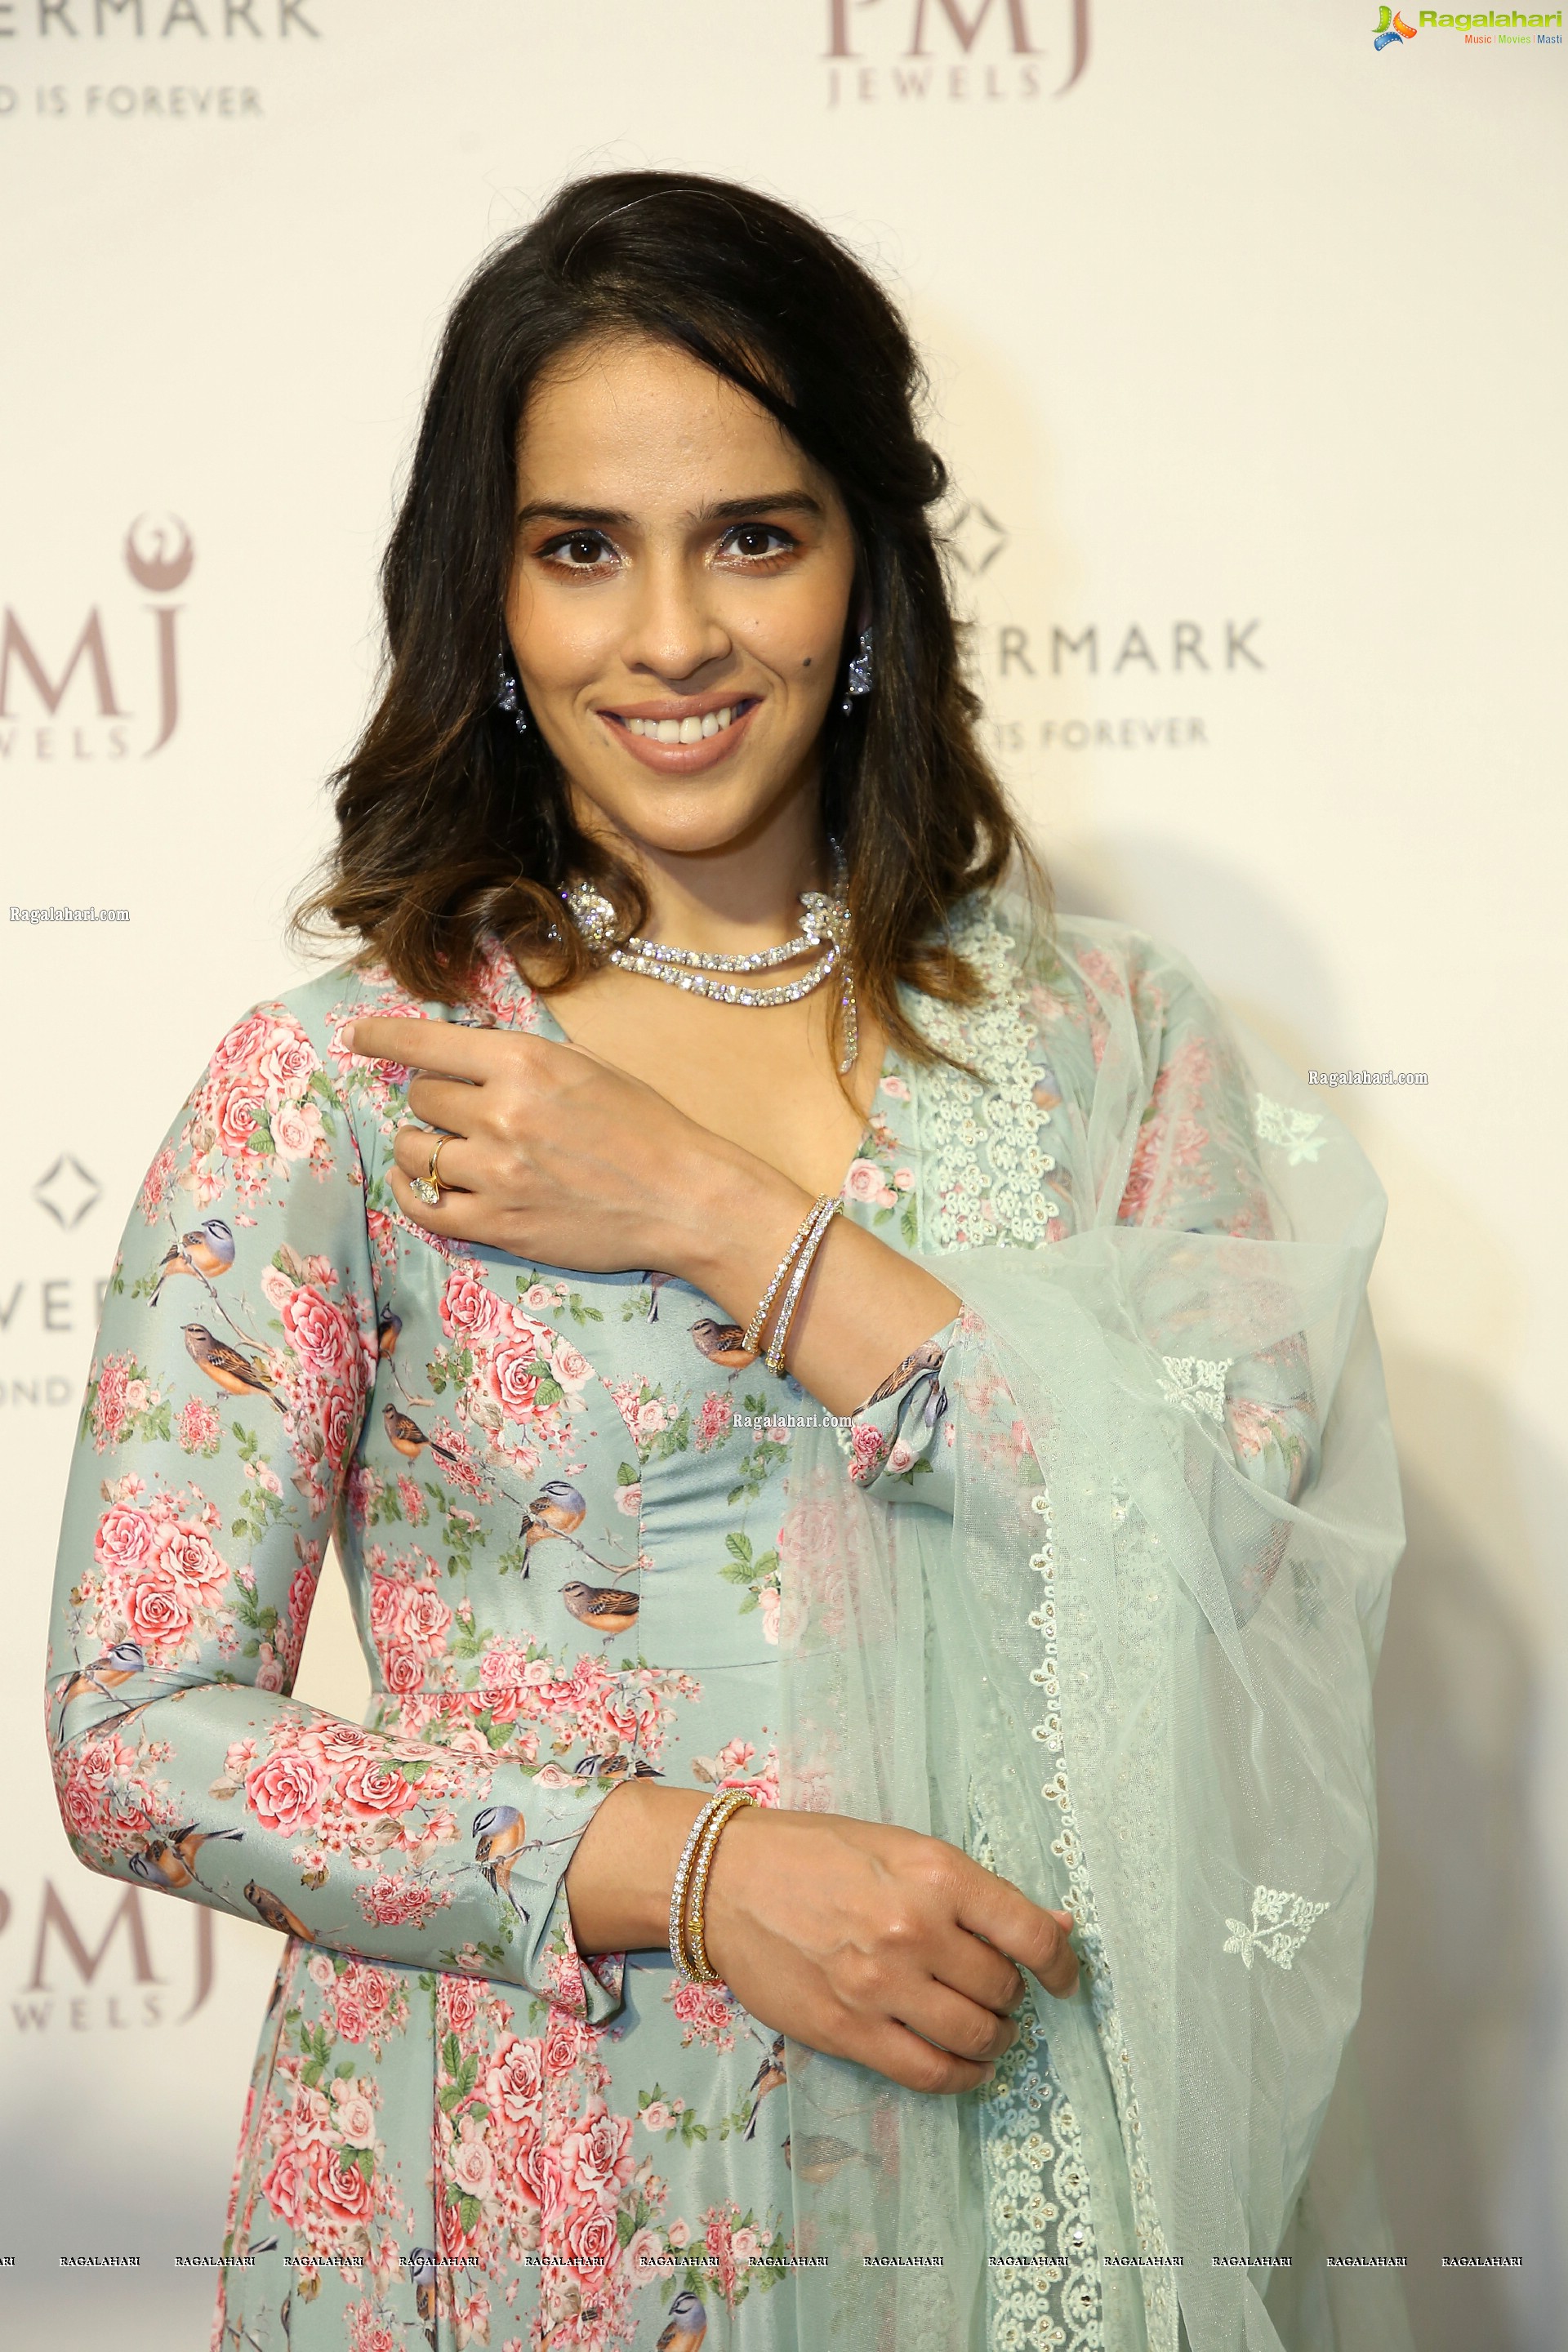 Saina Nehwal at Stunning Diamond Bangles Launch at the PMJ Store, HD Photo Gallery